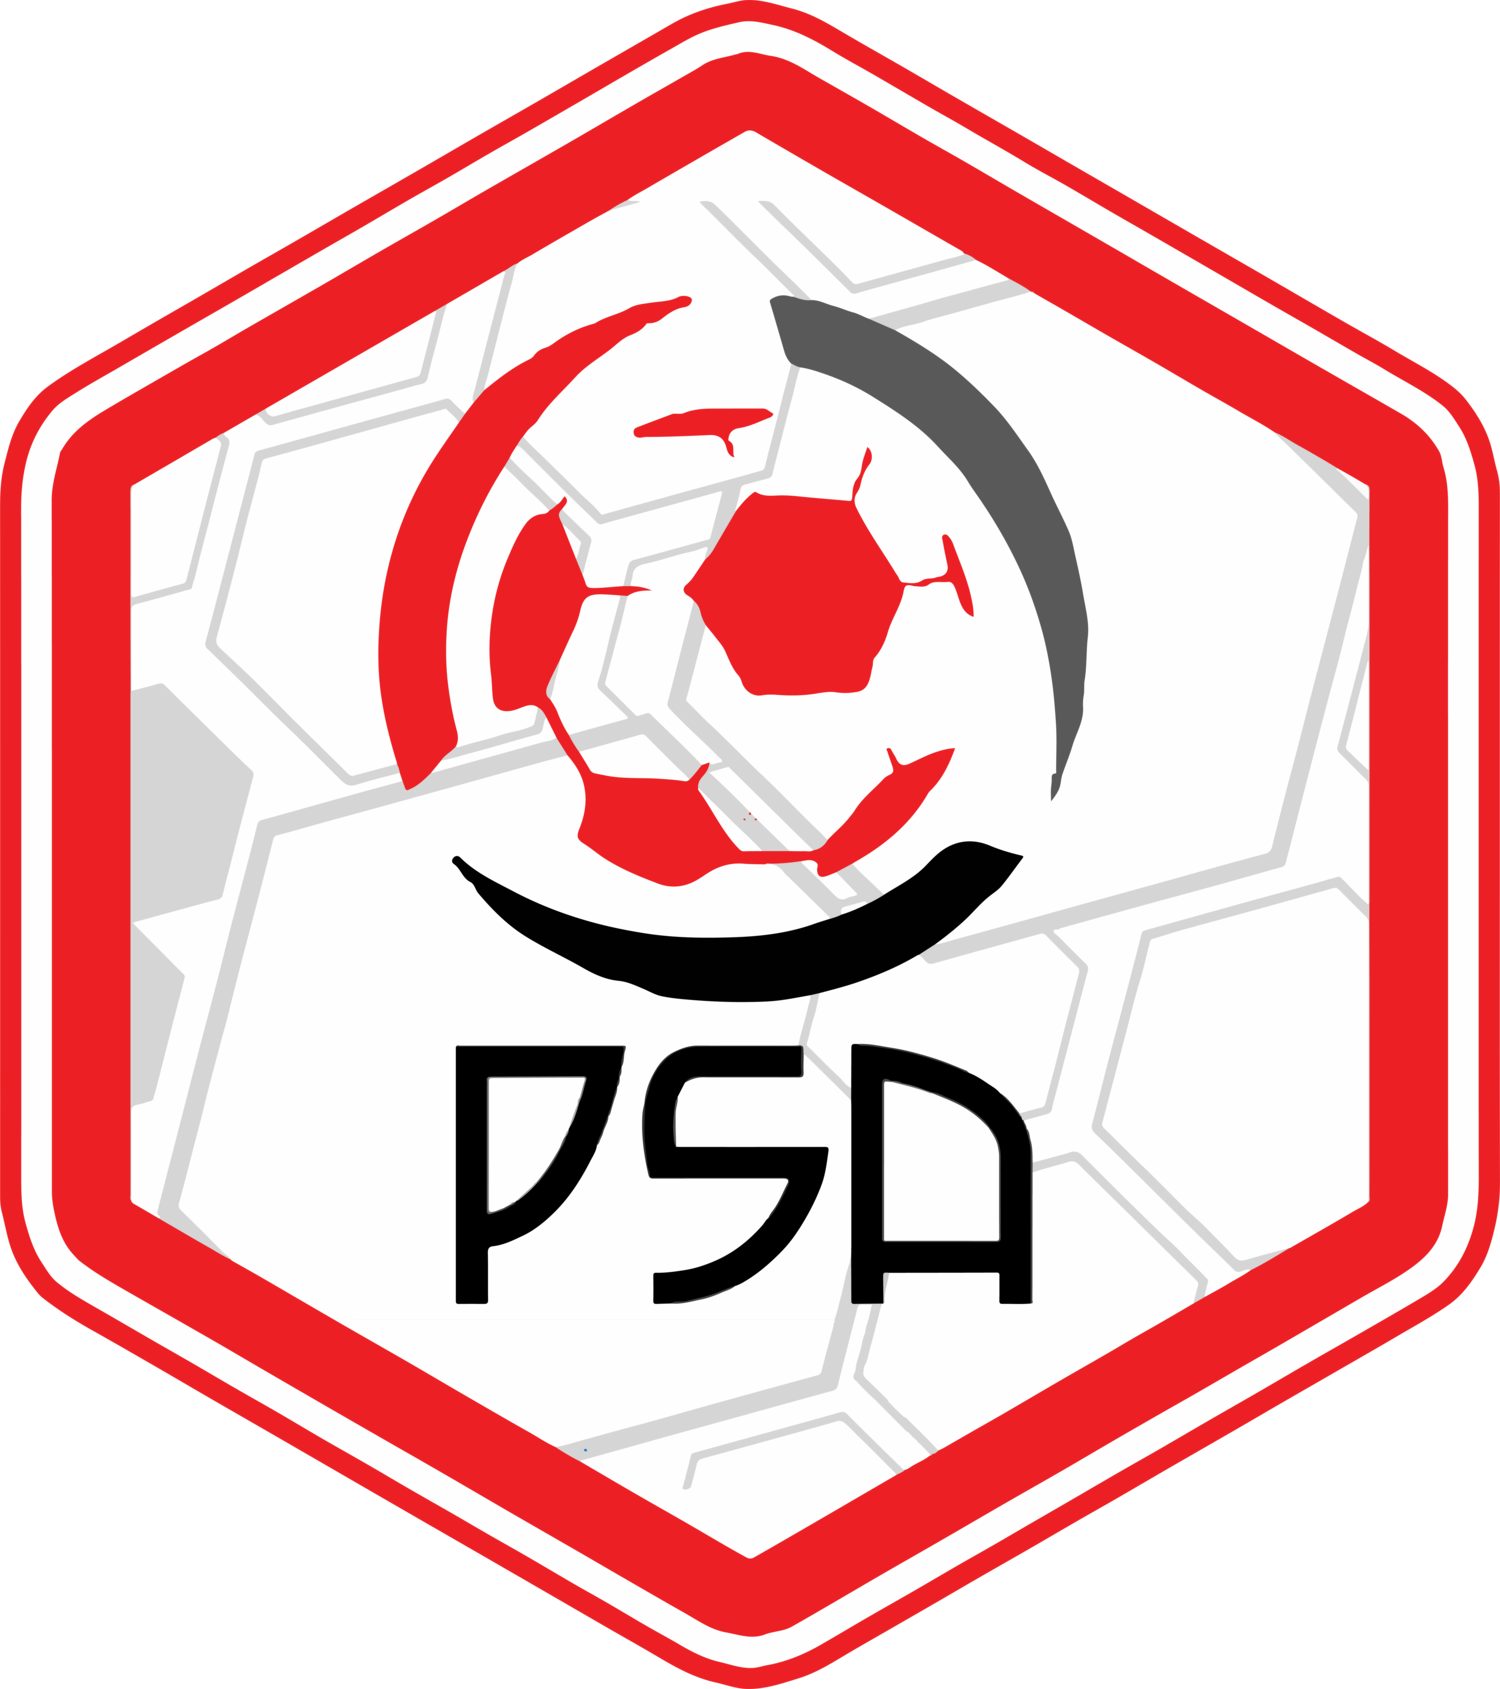 PSA - Pro Sports Academy